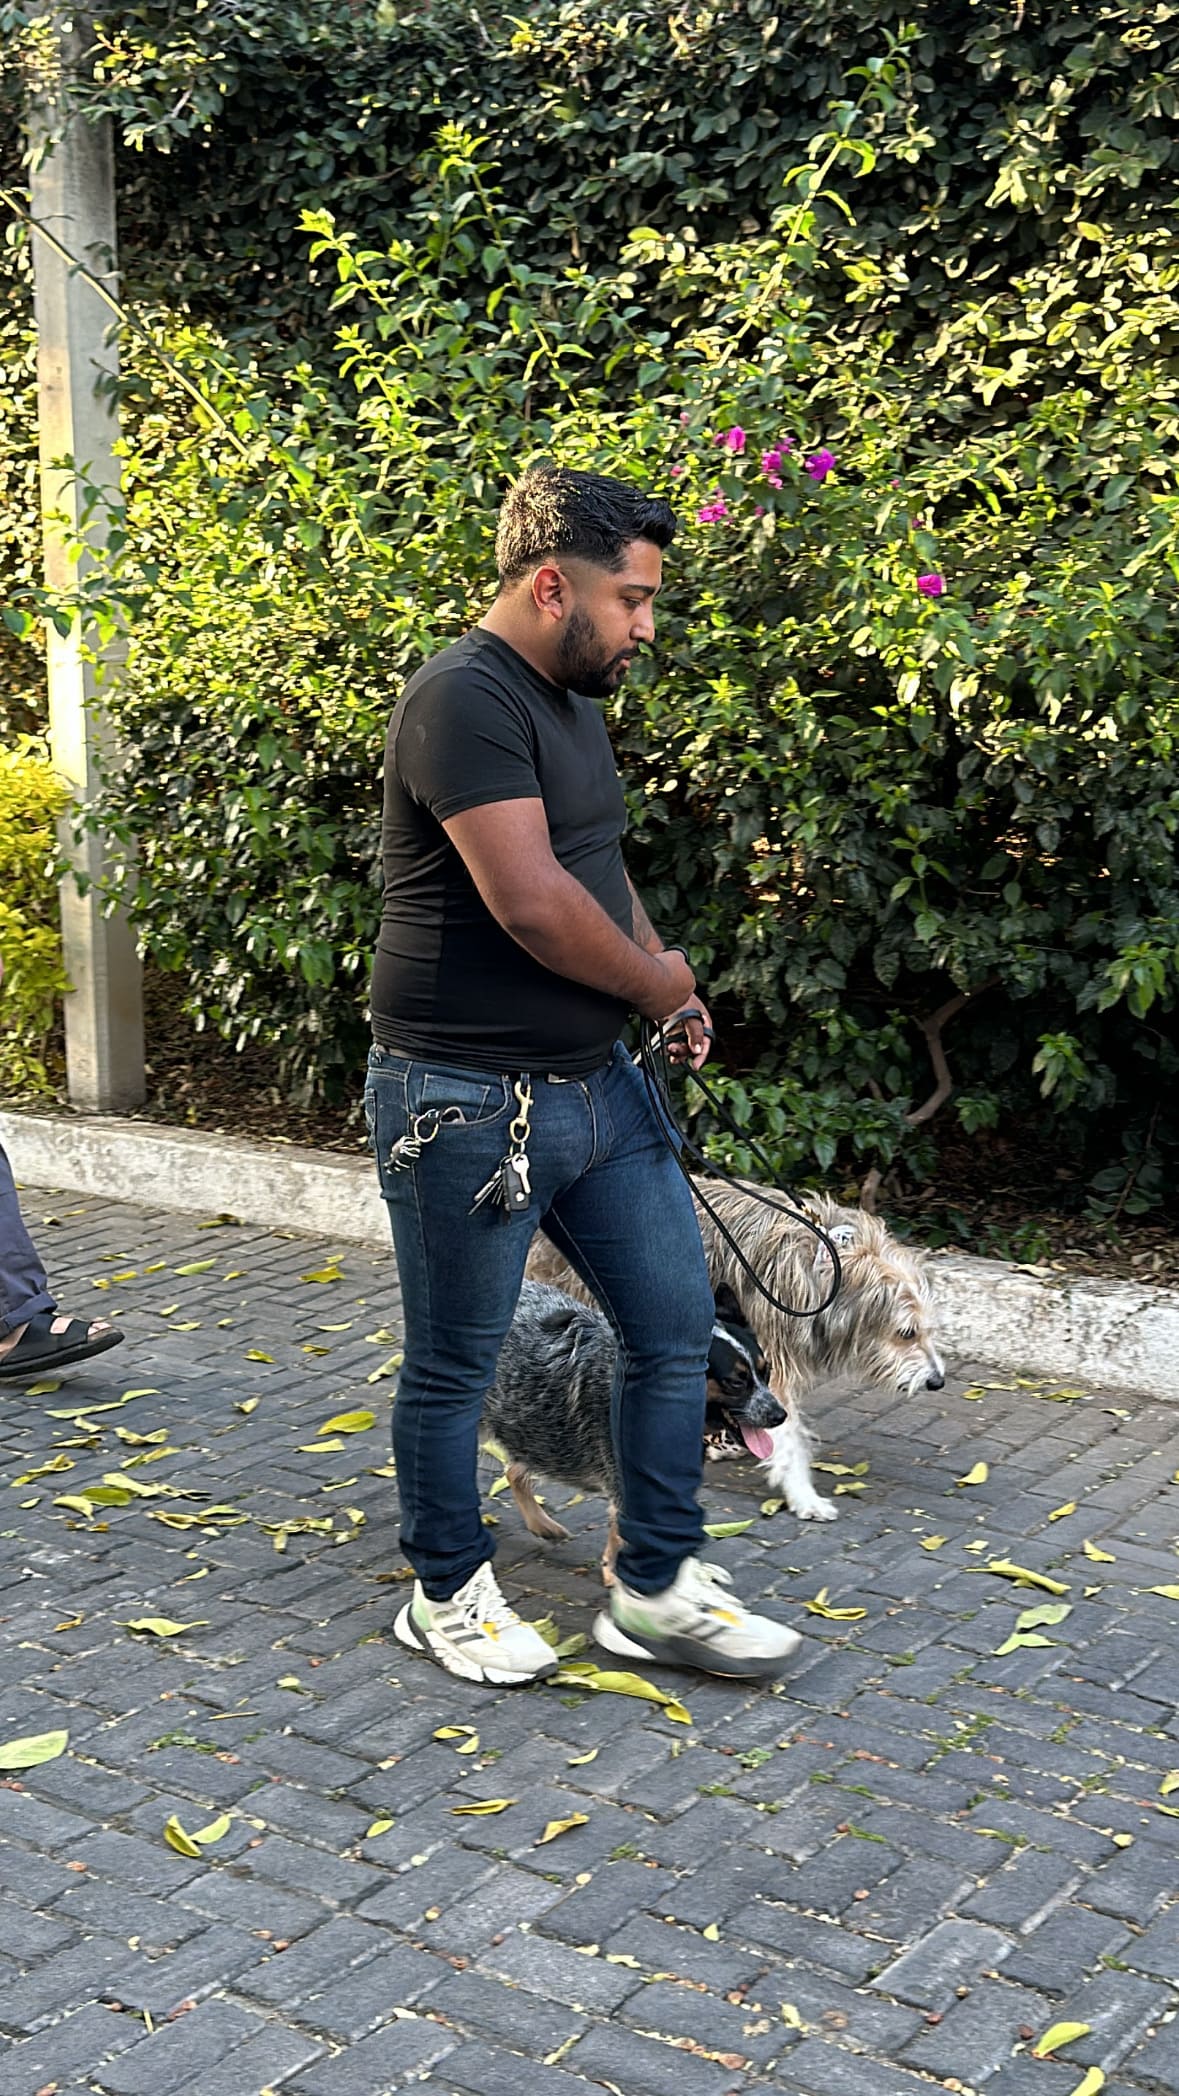 Adiestramiento de perros a domicilio en Guadalajara